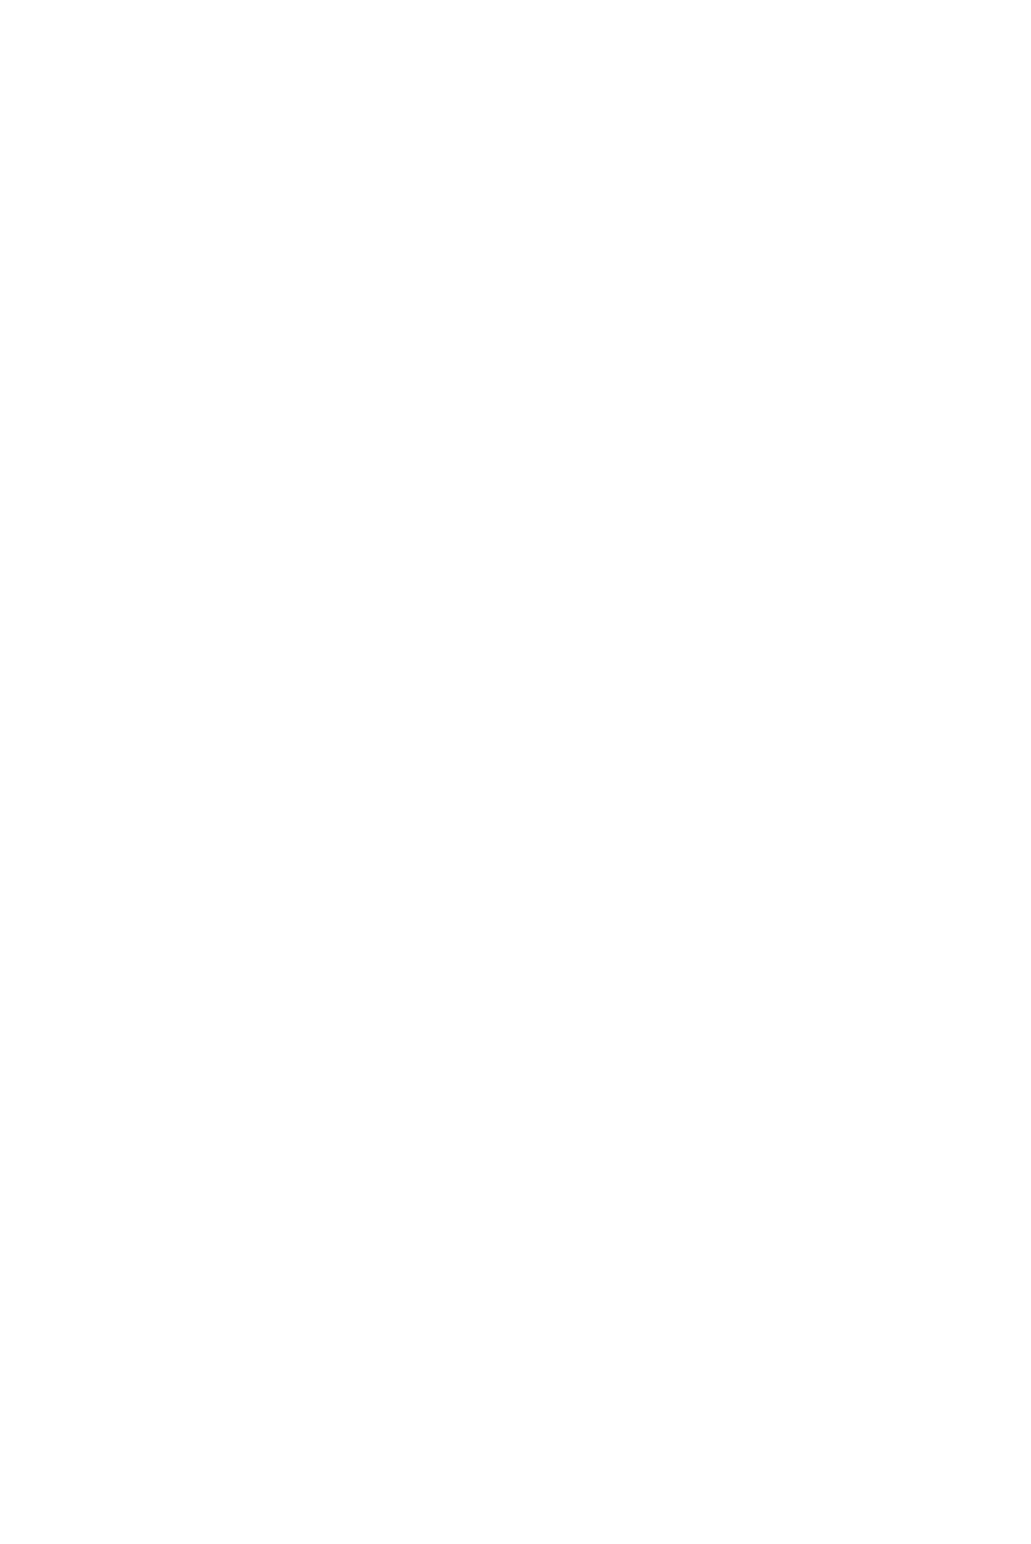 Davis Commodities logo pour fonds sombres (PNG transparent)